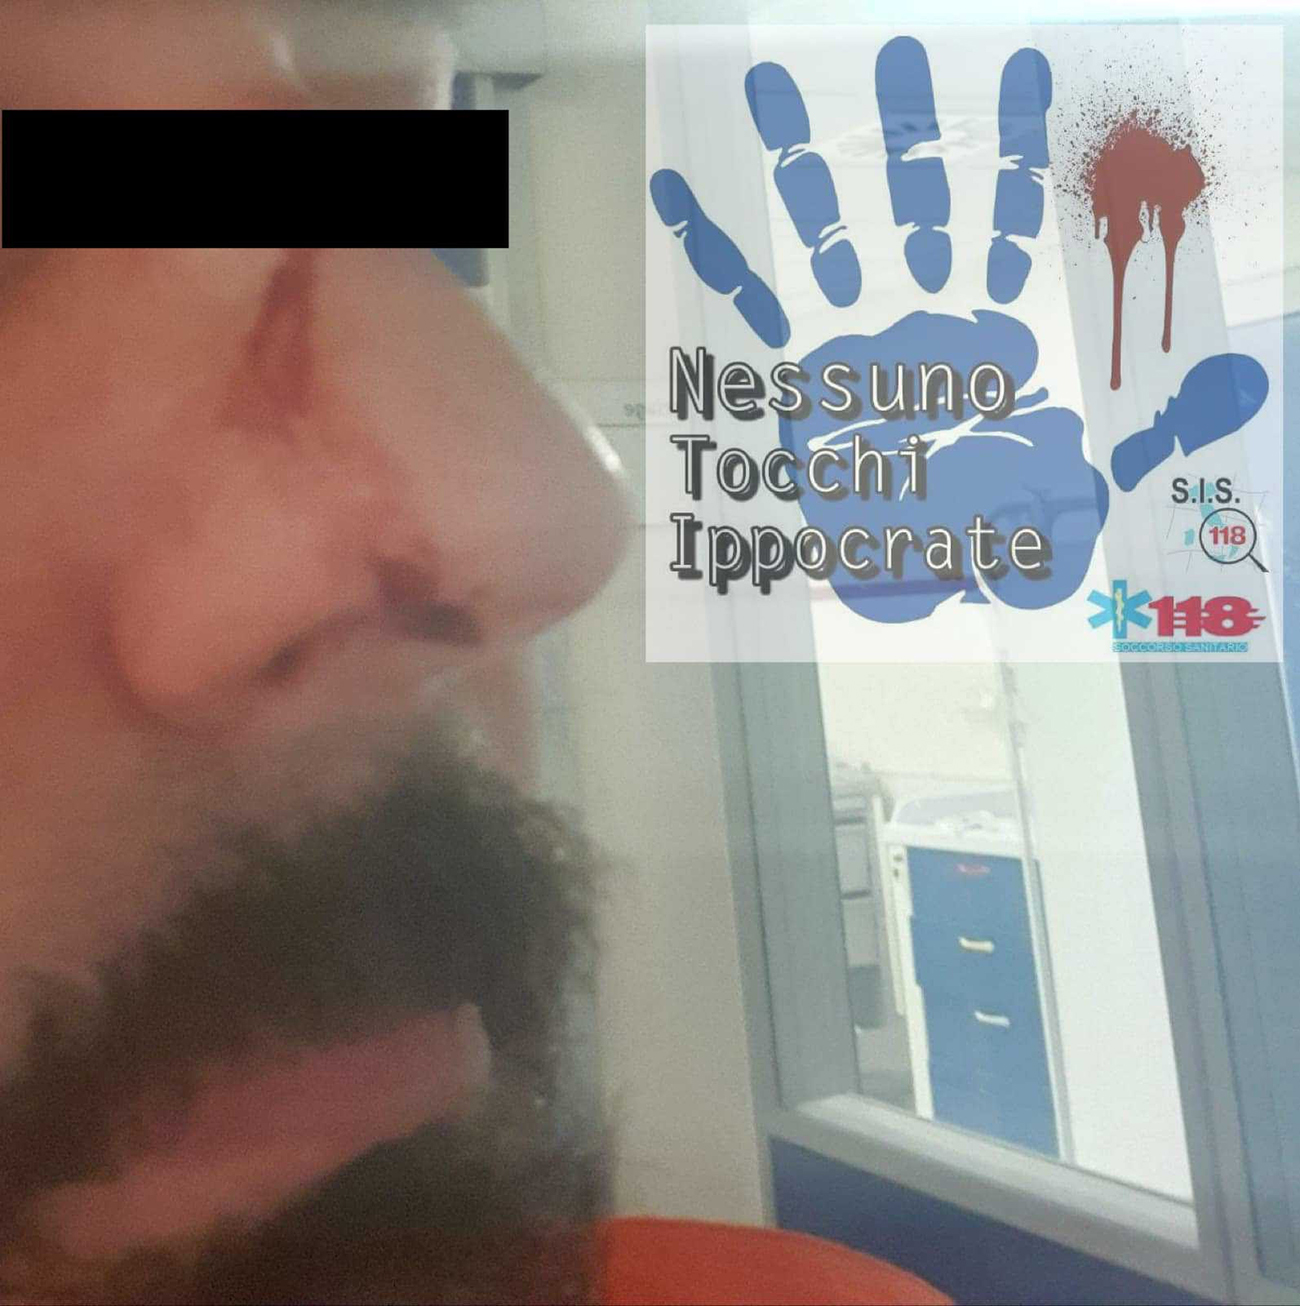 ‘Se mi vieni addosso ti sparo!’, autista del 118 inseguito e preso a pugni a Napoli